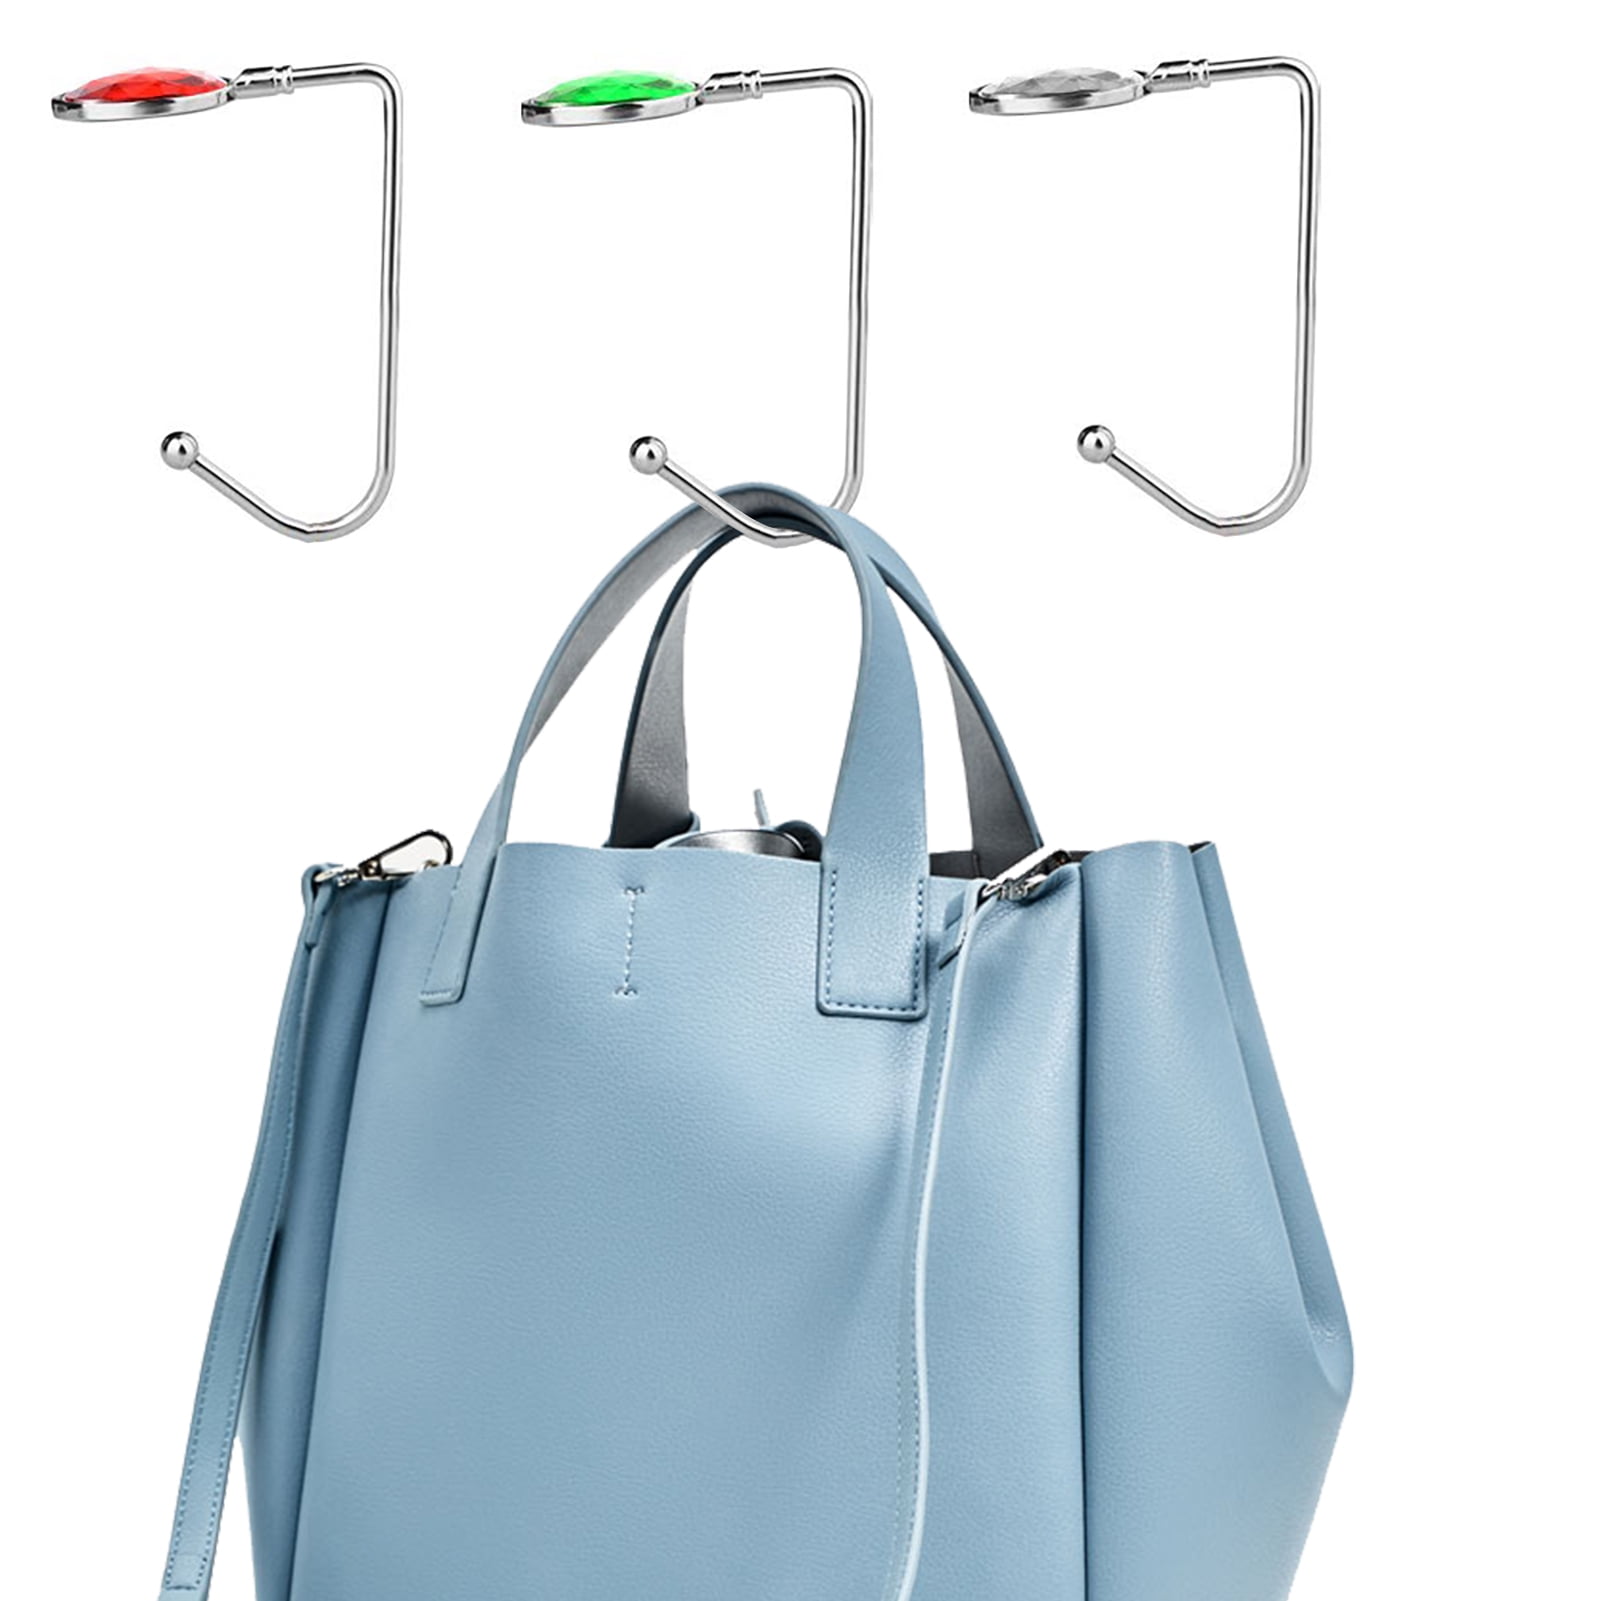 ROFLYER Purse Hook for TABLE3 Pack Instant Purse Holder Bag Hangerlong Womens Purse Hanger Handbag Pocketbook Holder Bag Storage Stylish Desk Accessor